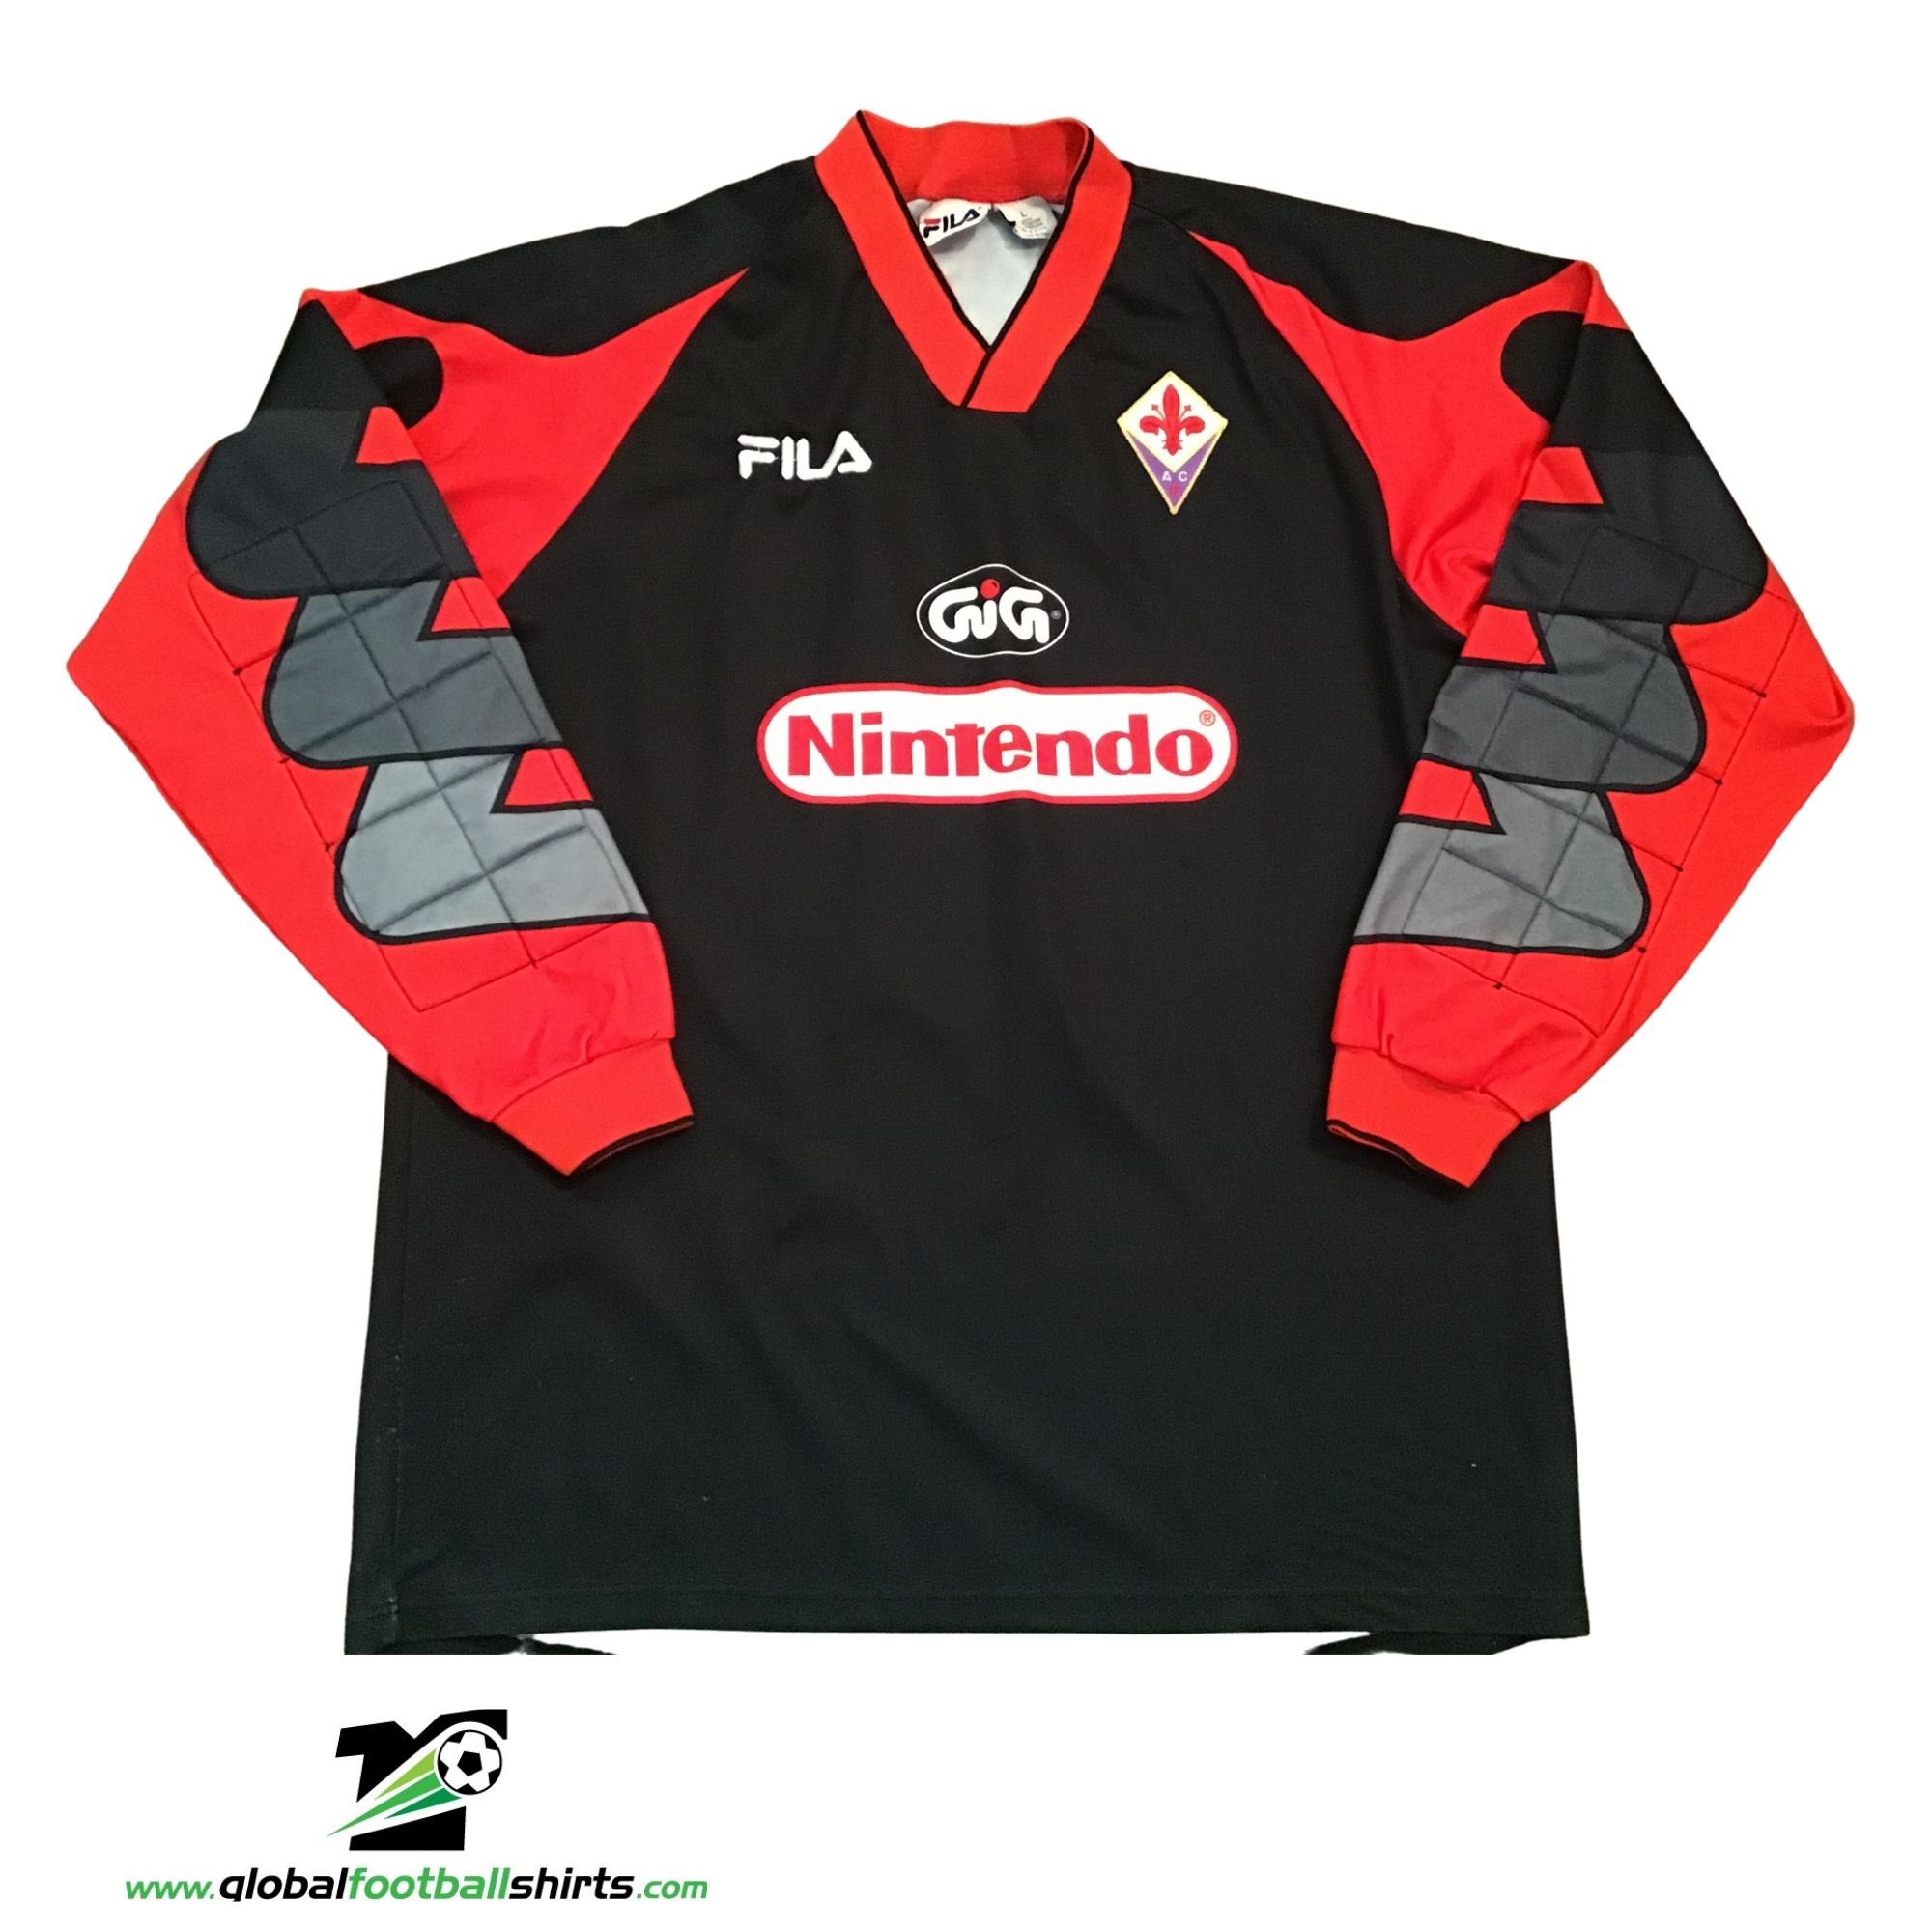 GFS Football Shirts on X: '#fiorentina goalkeeper shirt from 1997